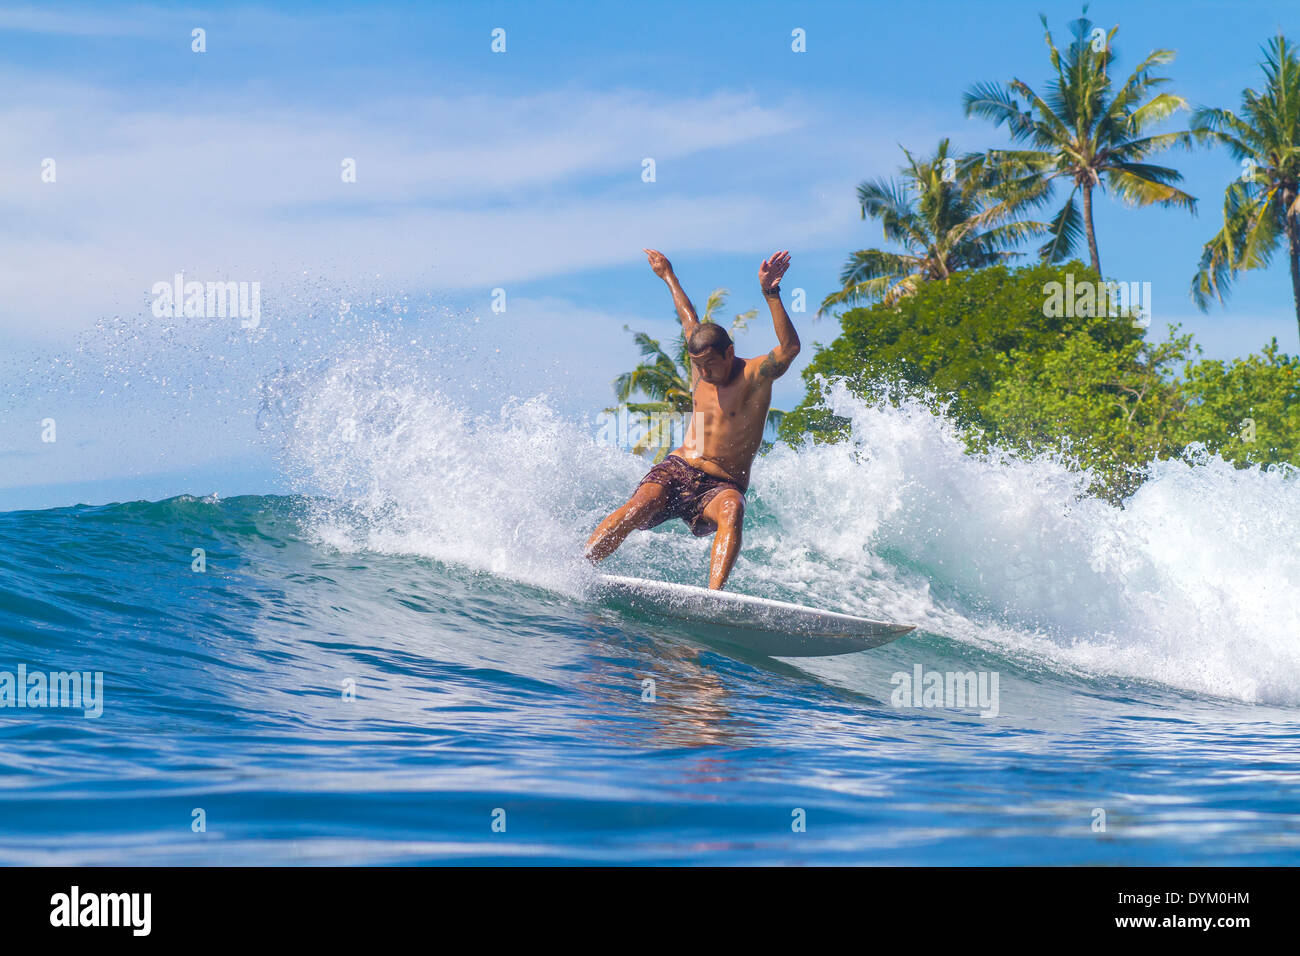 Bild eine Welle zu surfen. Insel Bali. Indonesien. Stockfoto